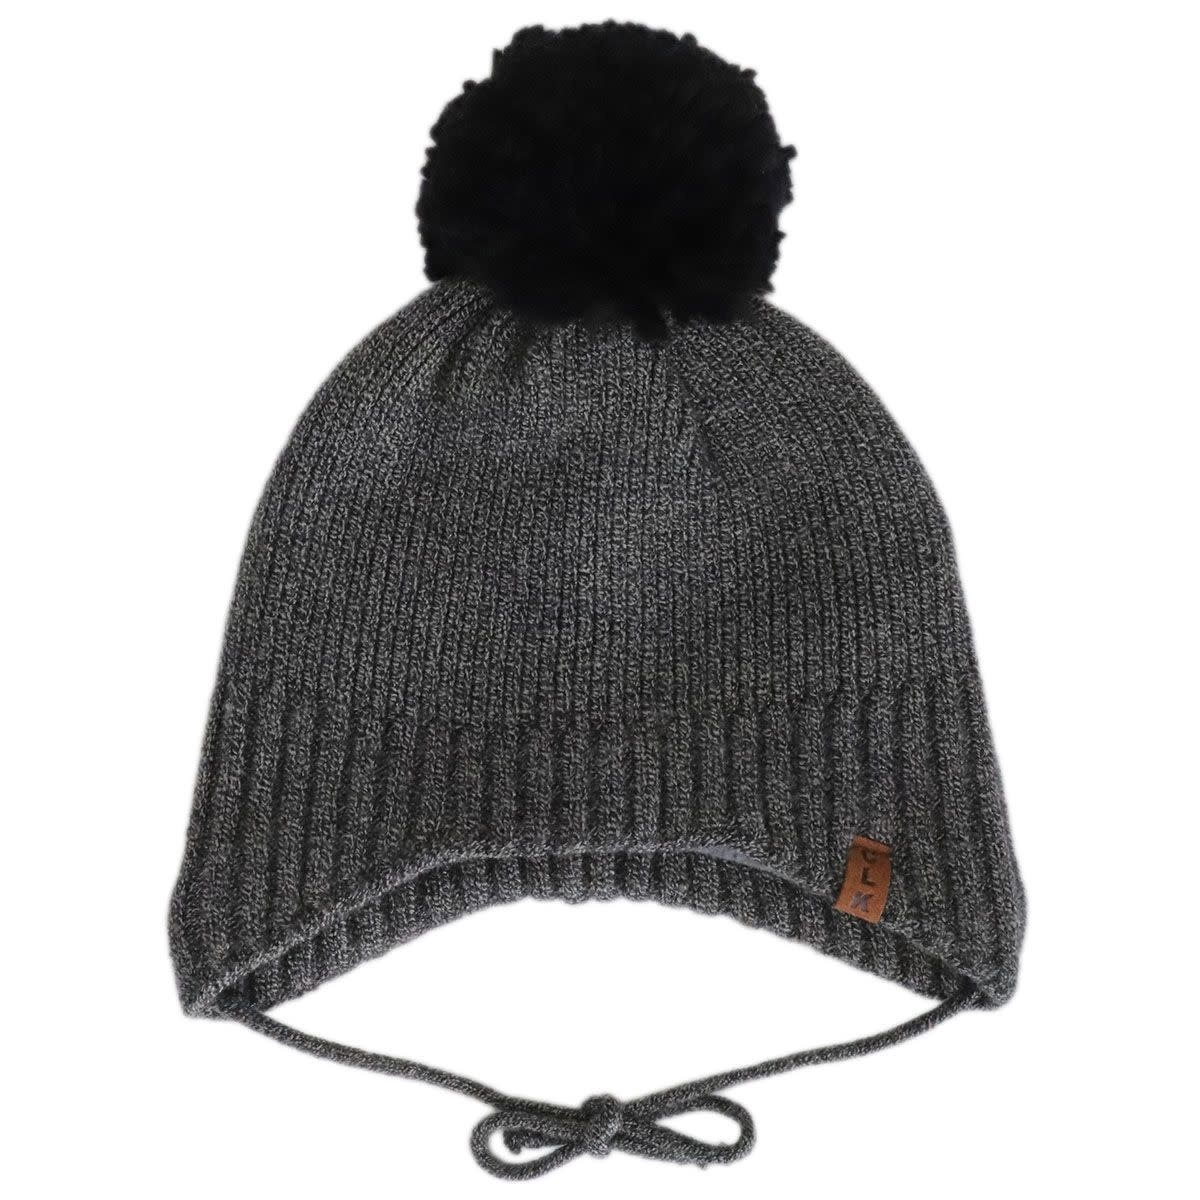 Fleece Lined Knit Hat - Black